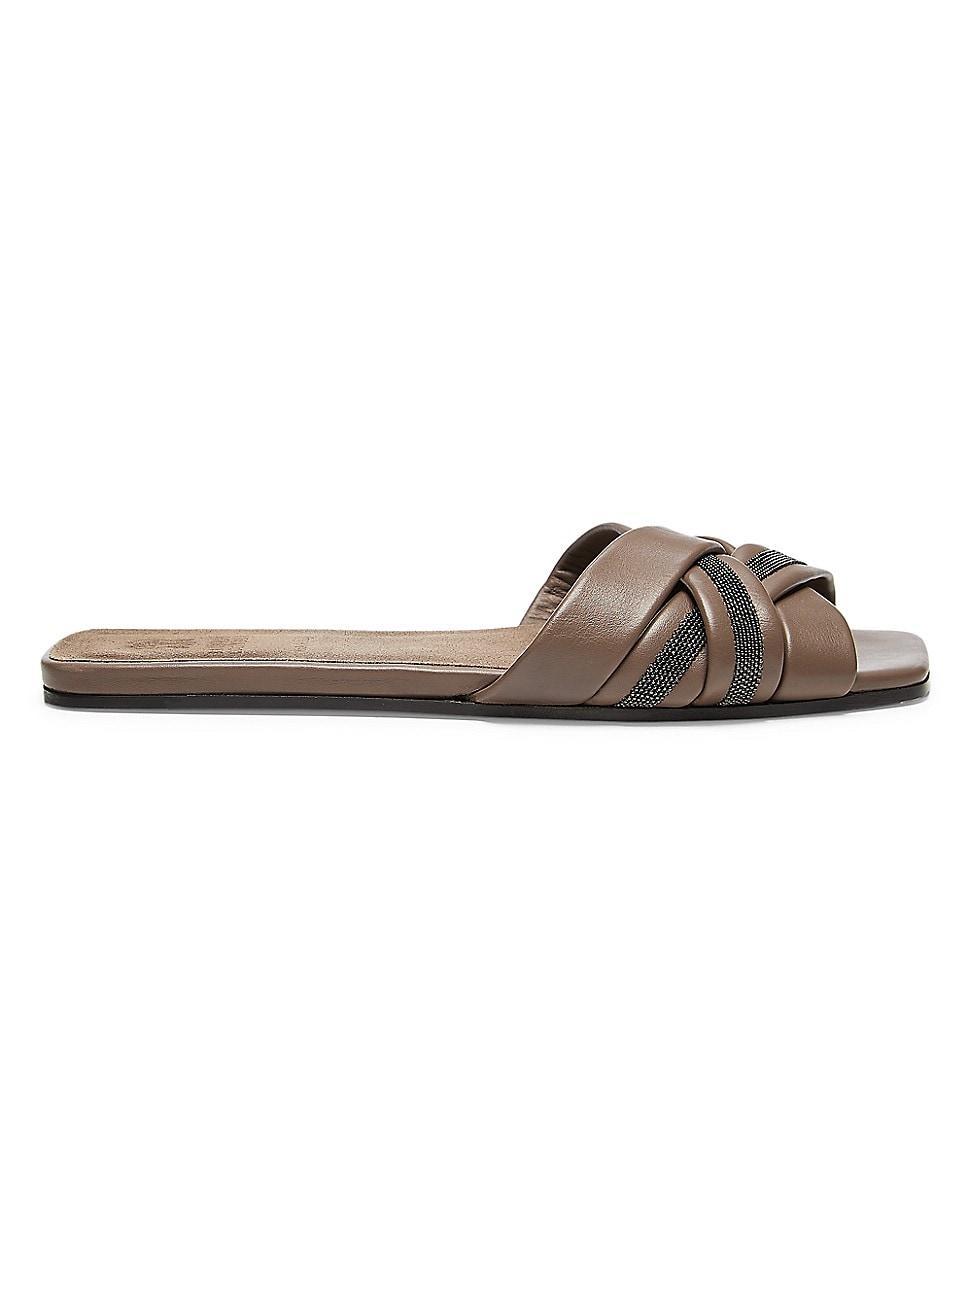 Leather Monili Flat Slide Sandals Product Image